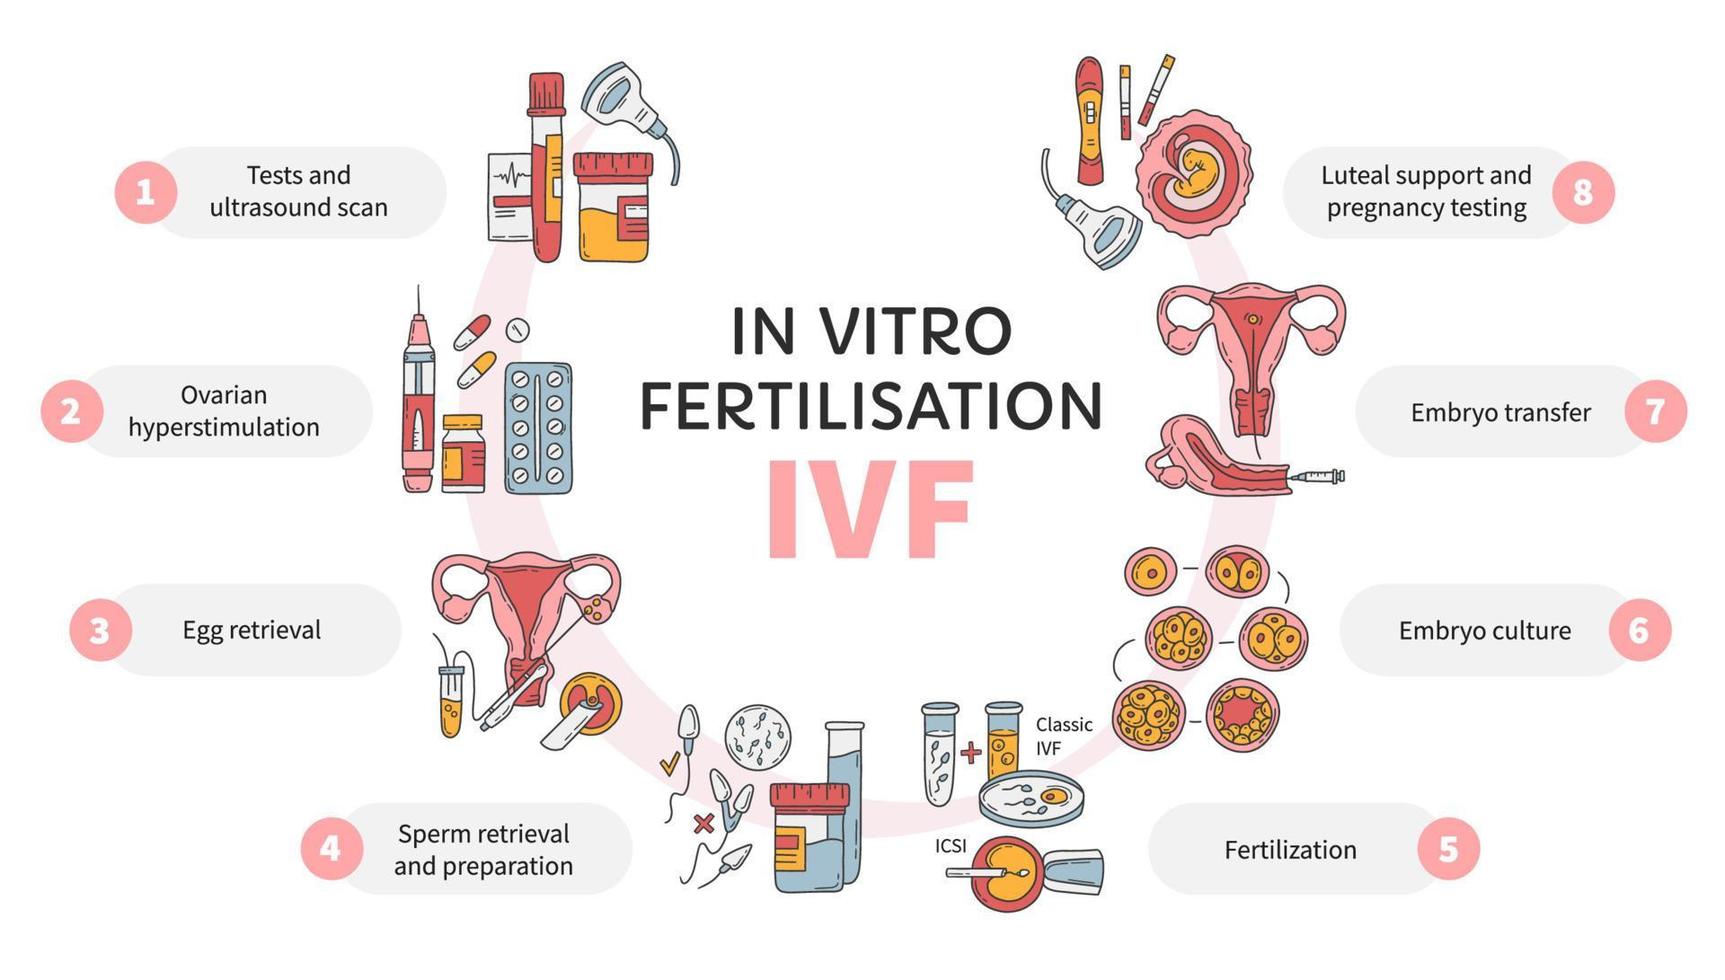 fertilização in vitro ivf vetor círculo infográfico, esquema de tratamento de infertilidade. hiperestimulação ovariana, inseminação artificial, cultura de embriões, suporte luteal. procedimento médico para gravidez